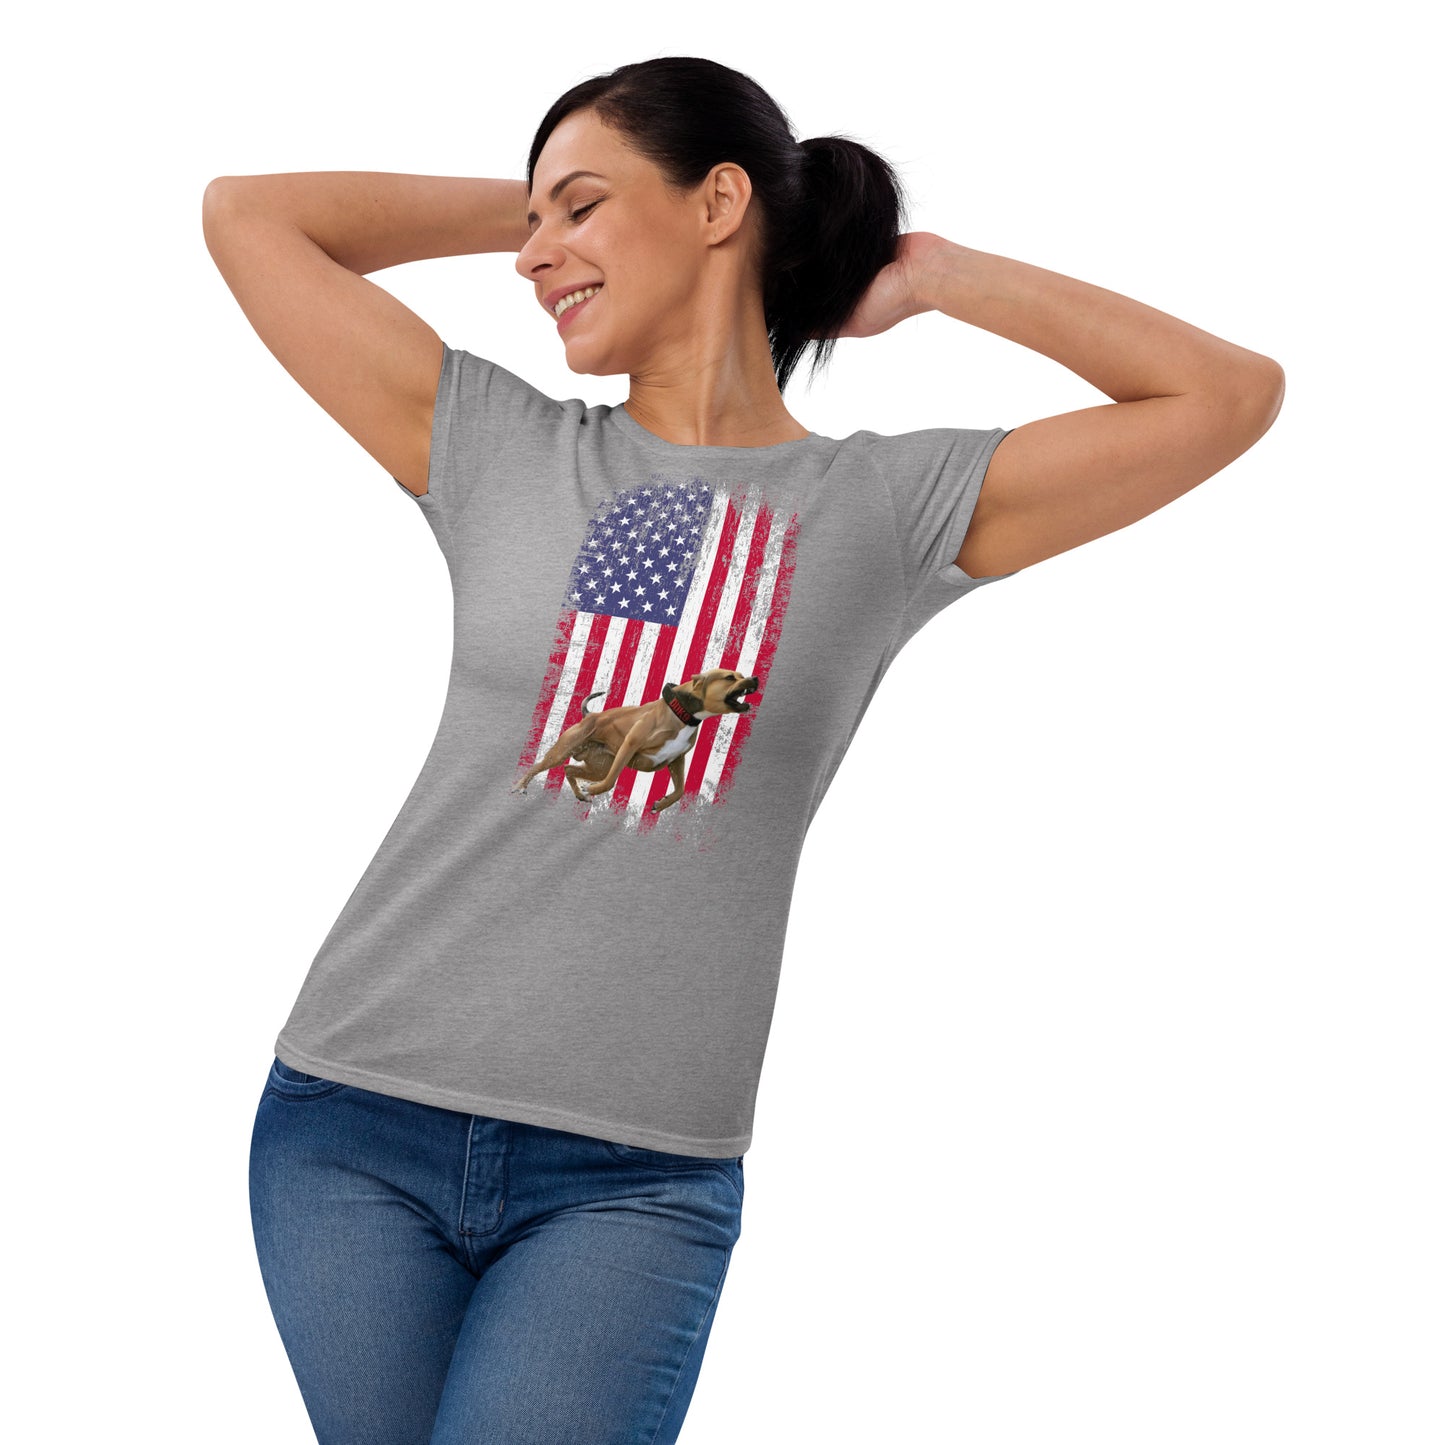 Ace USA Women's T Shirt